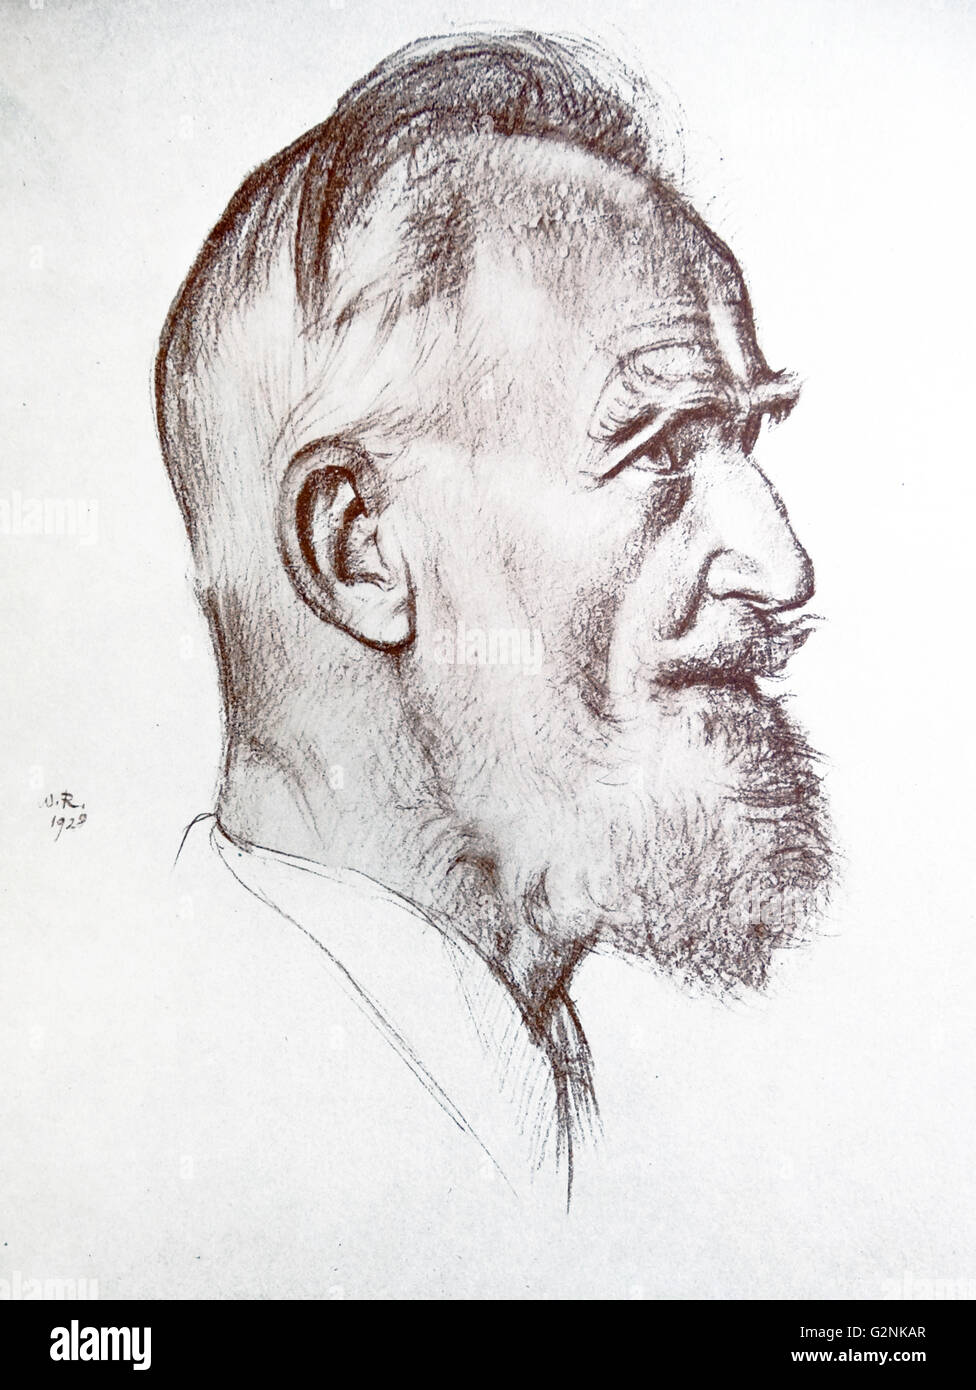 Porträt von George Bernard Shaw von Sir William Rothenstein. Rothenstein (1872-1945) war ein englischer Maler, Grafiker und Zeichner. Stockfoto